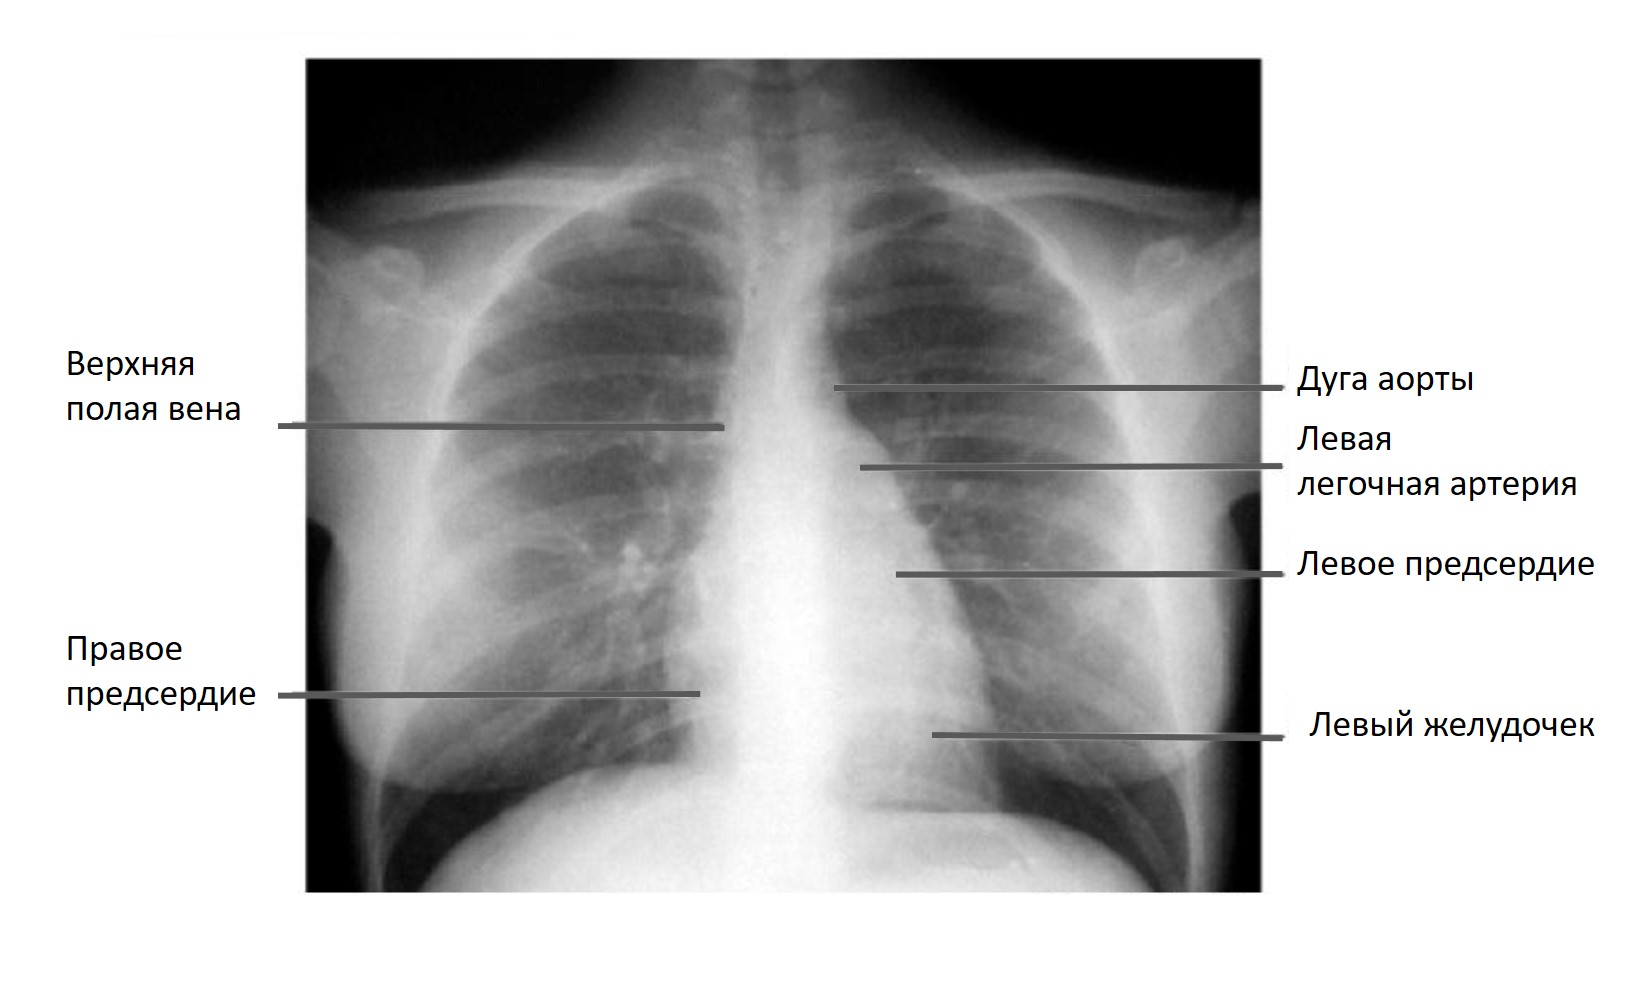 Рентгенологические границы сердца, рентгенология, Рентген, границы сердца, рентген сердца, Рентгенография органов грудной клетки, границы сердца на рентгене, определение границ сердца